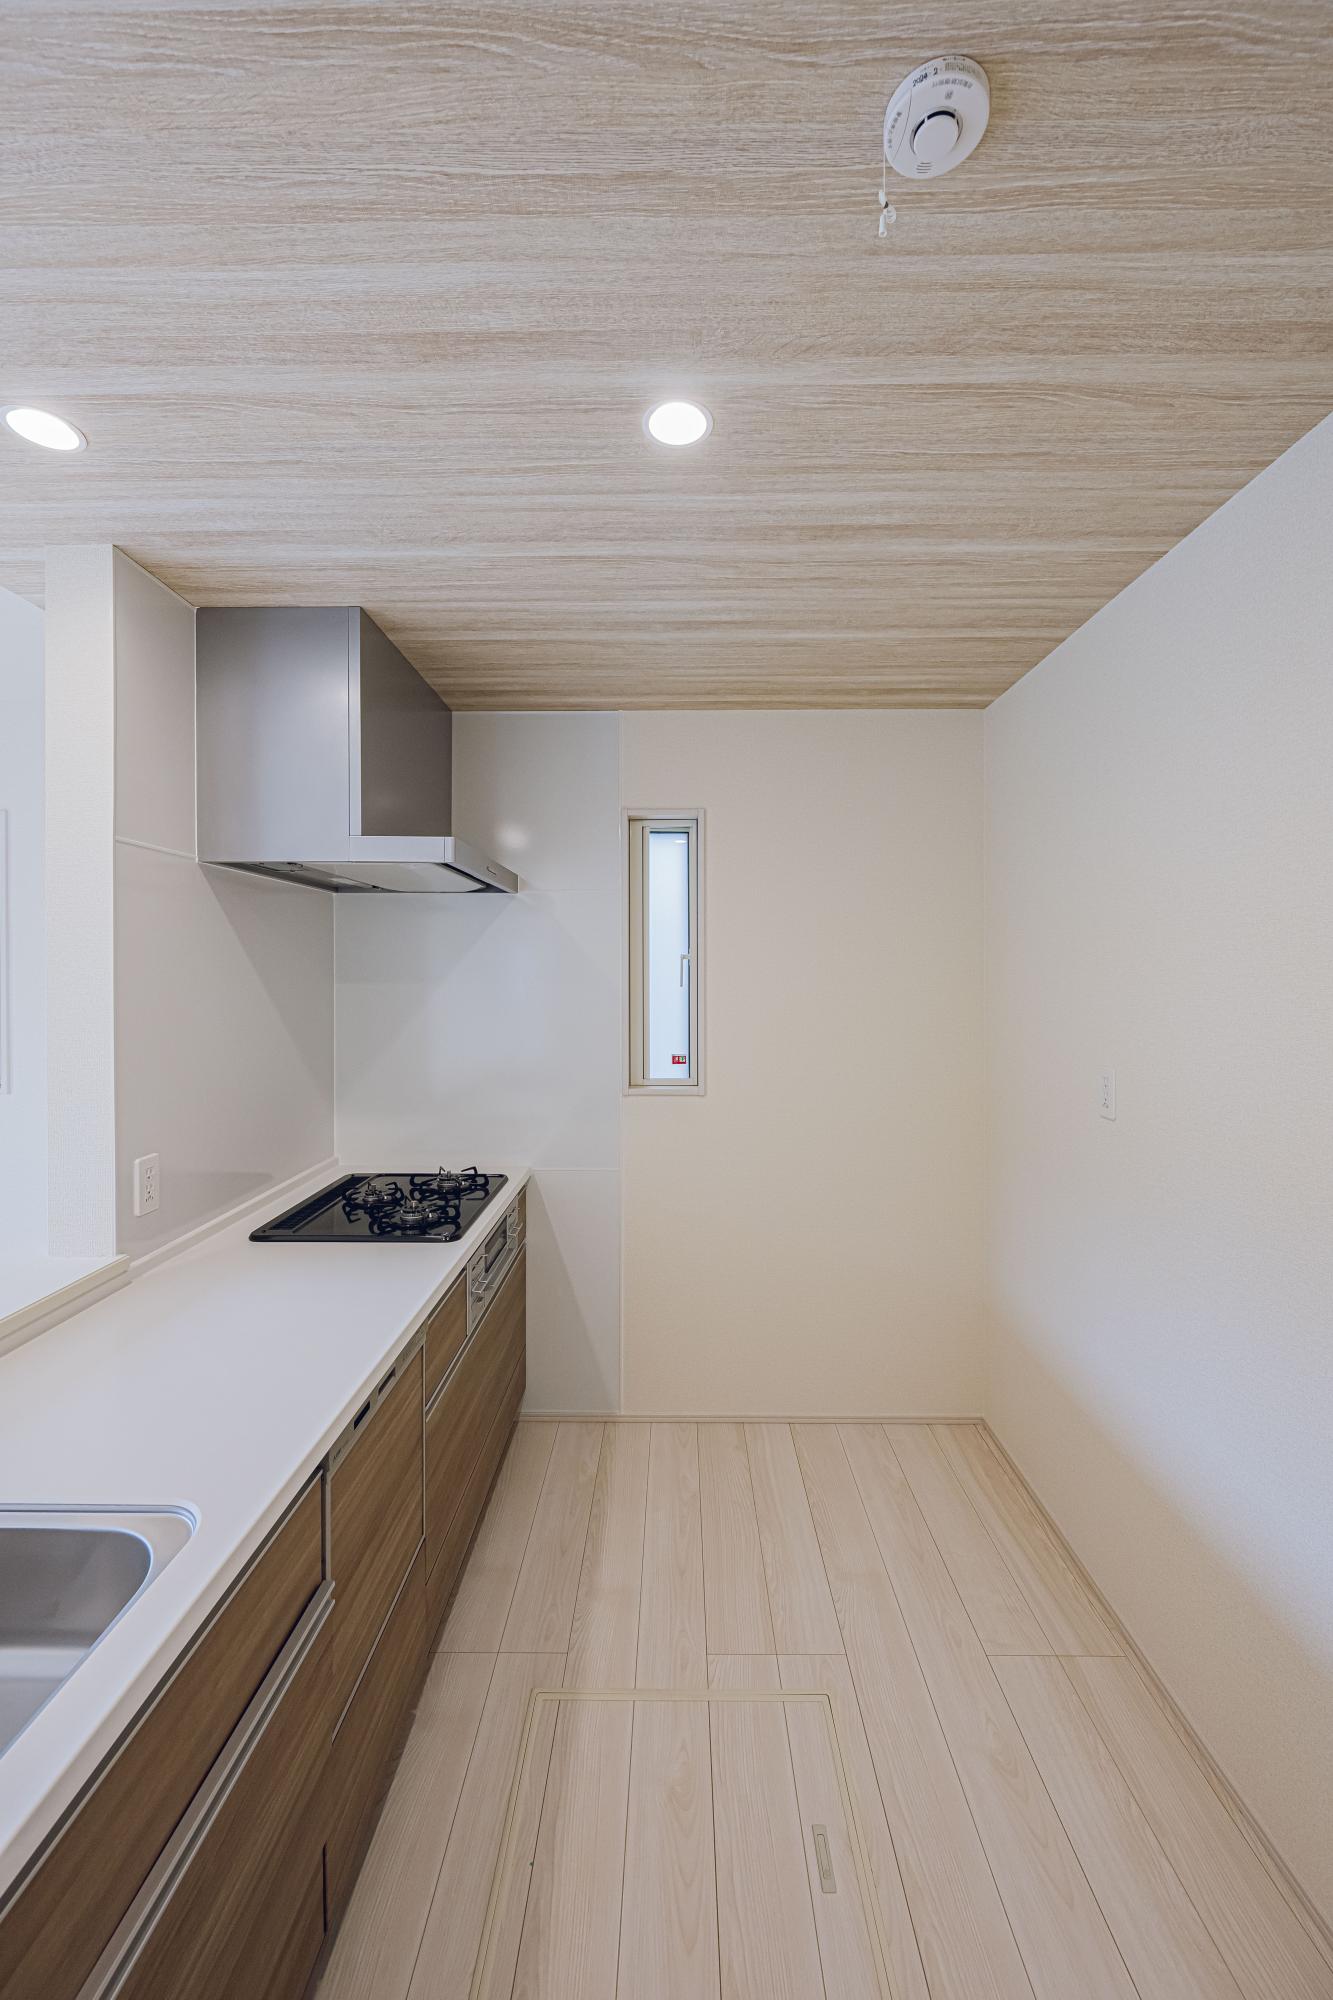 3号棟:キッチン　「ビルトイン食洗器」付システムキッチン。
人造大理石システムキッチン(天板)
外の光と空気が入るキッチンの小窓